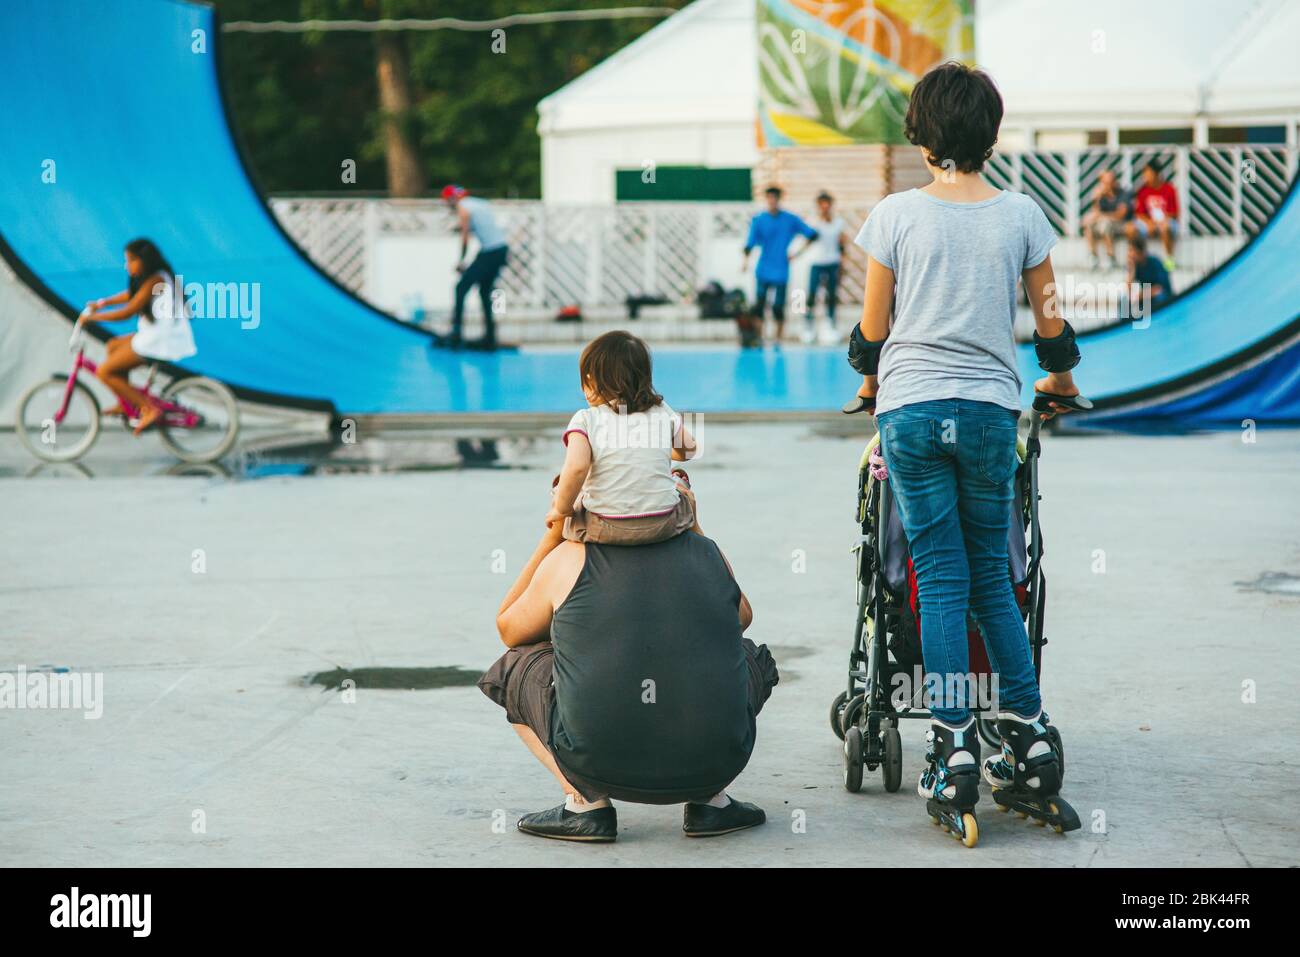 Mosca, Russia - 9 AGOSTO 2014: La giovane donna sportiva mamma guida uno skateboard nel parco Sokolniki mentre suo marito tiene un bambino sul collo Foto Stock